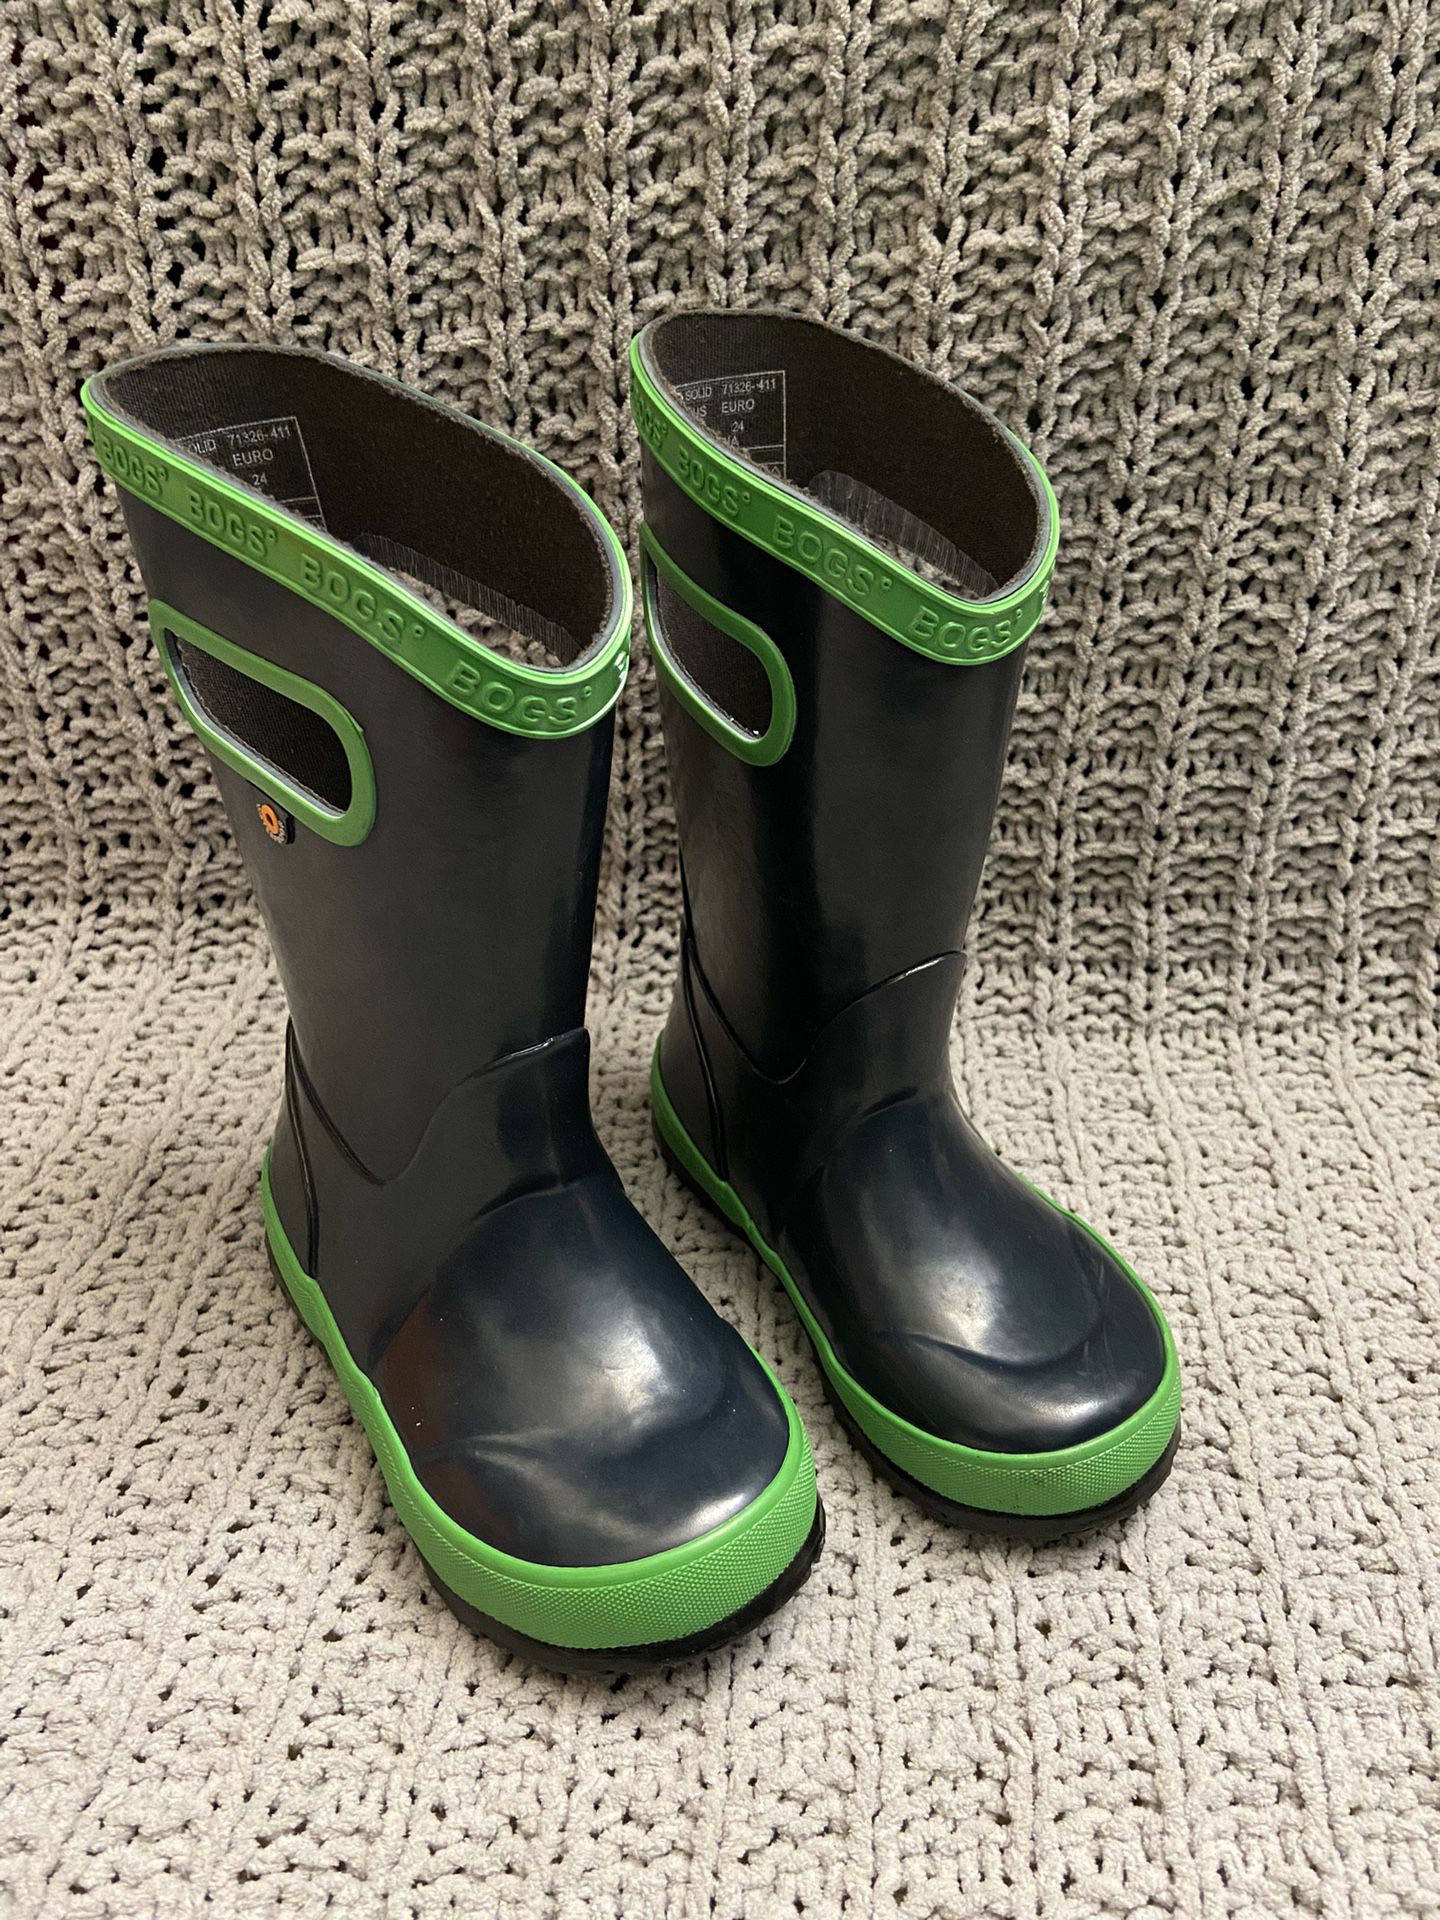 Boys Bogs Rain Boots Size 8